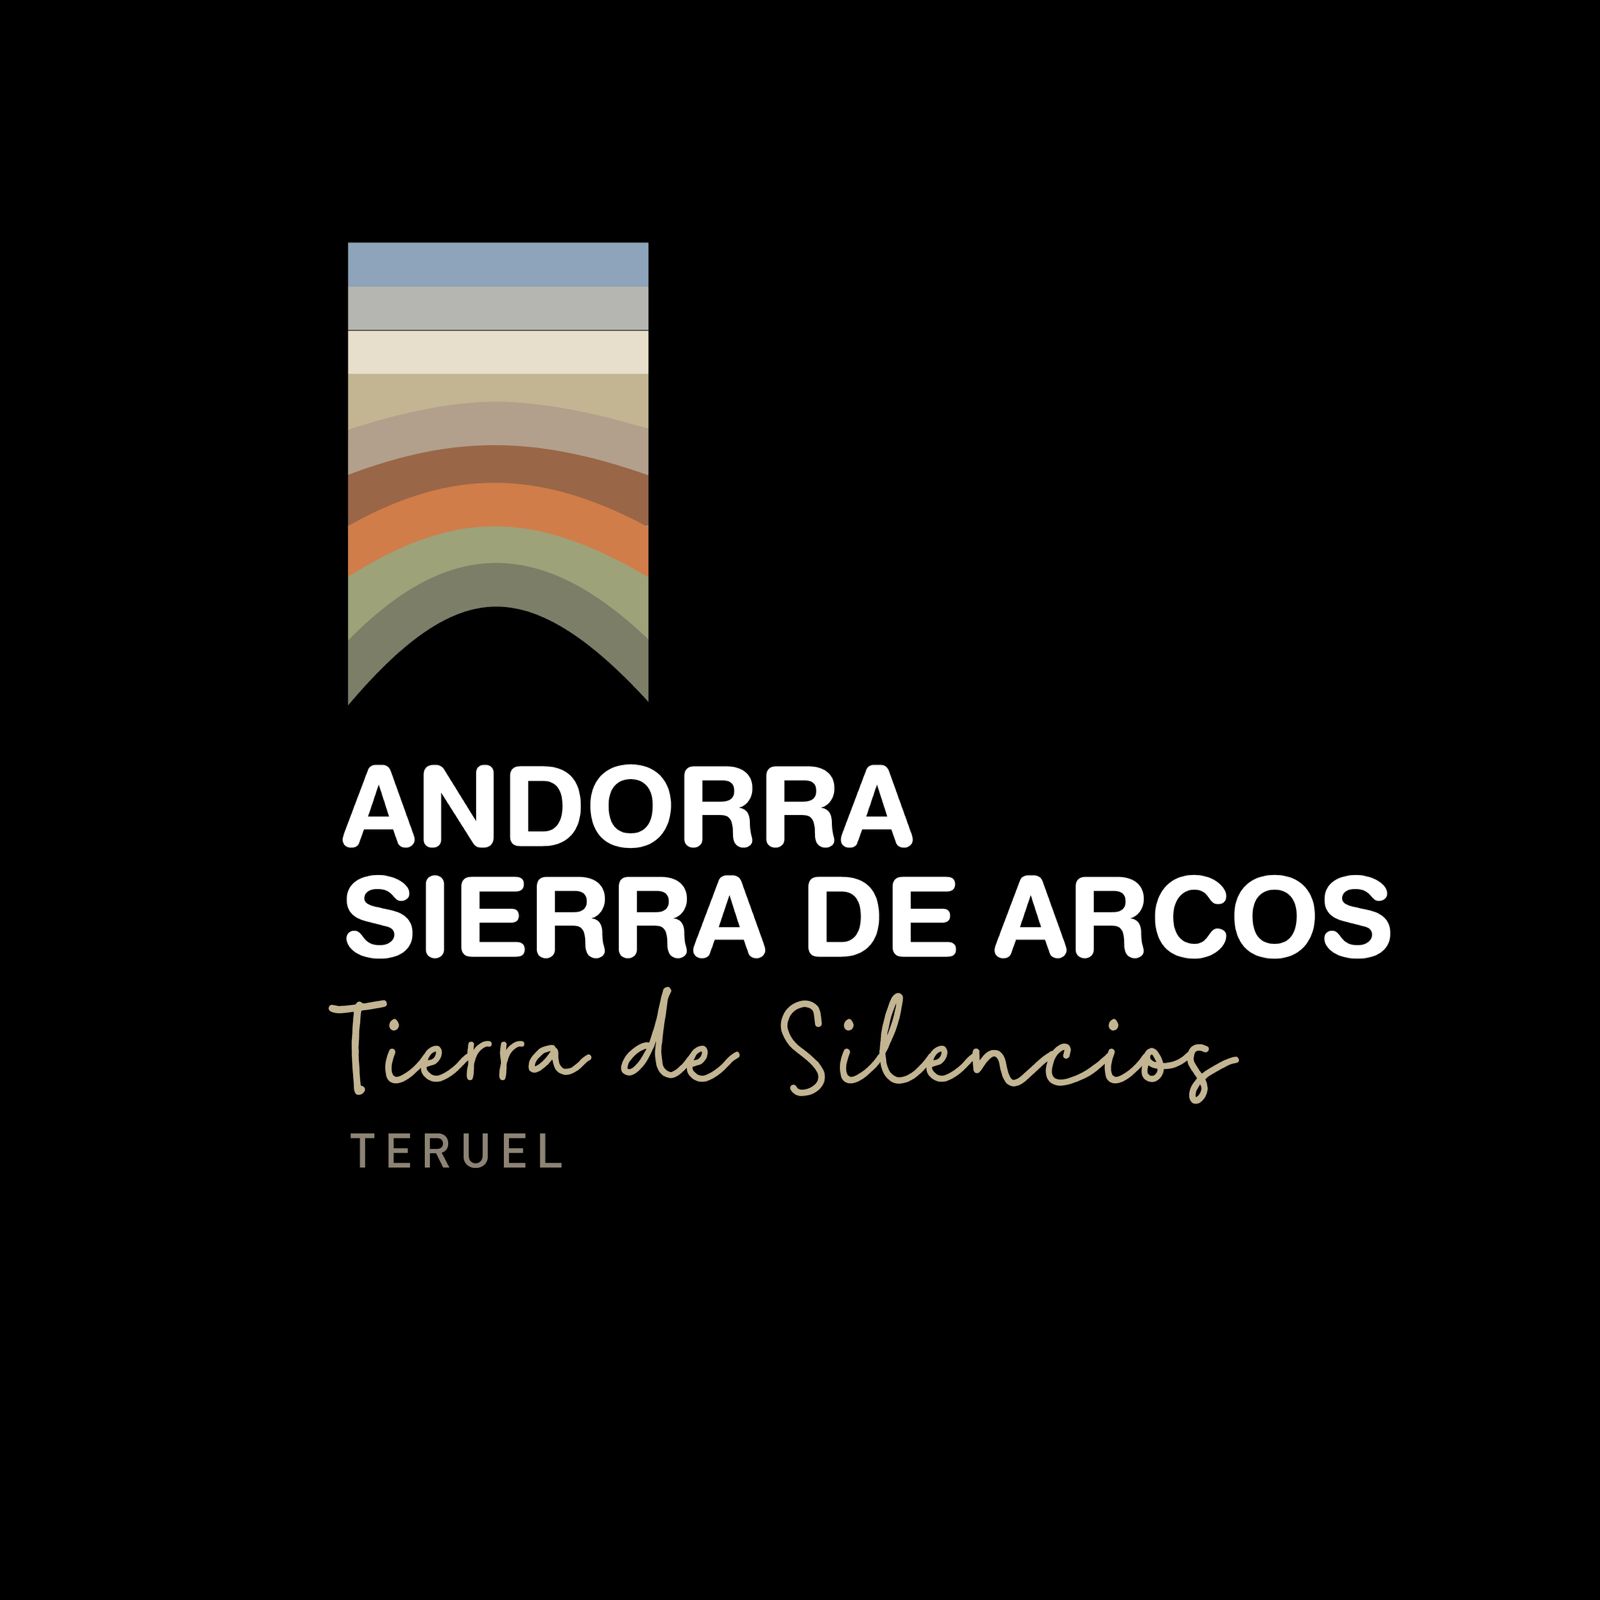 Definició dels atributs i valors de marca per a estratègia de branding turístic de la comarca Andorra Sierra de Arcos